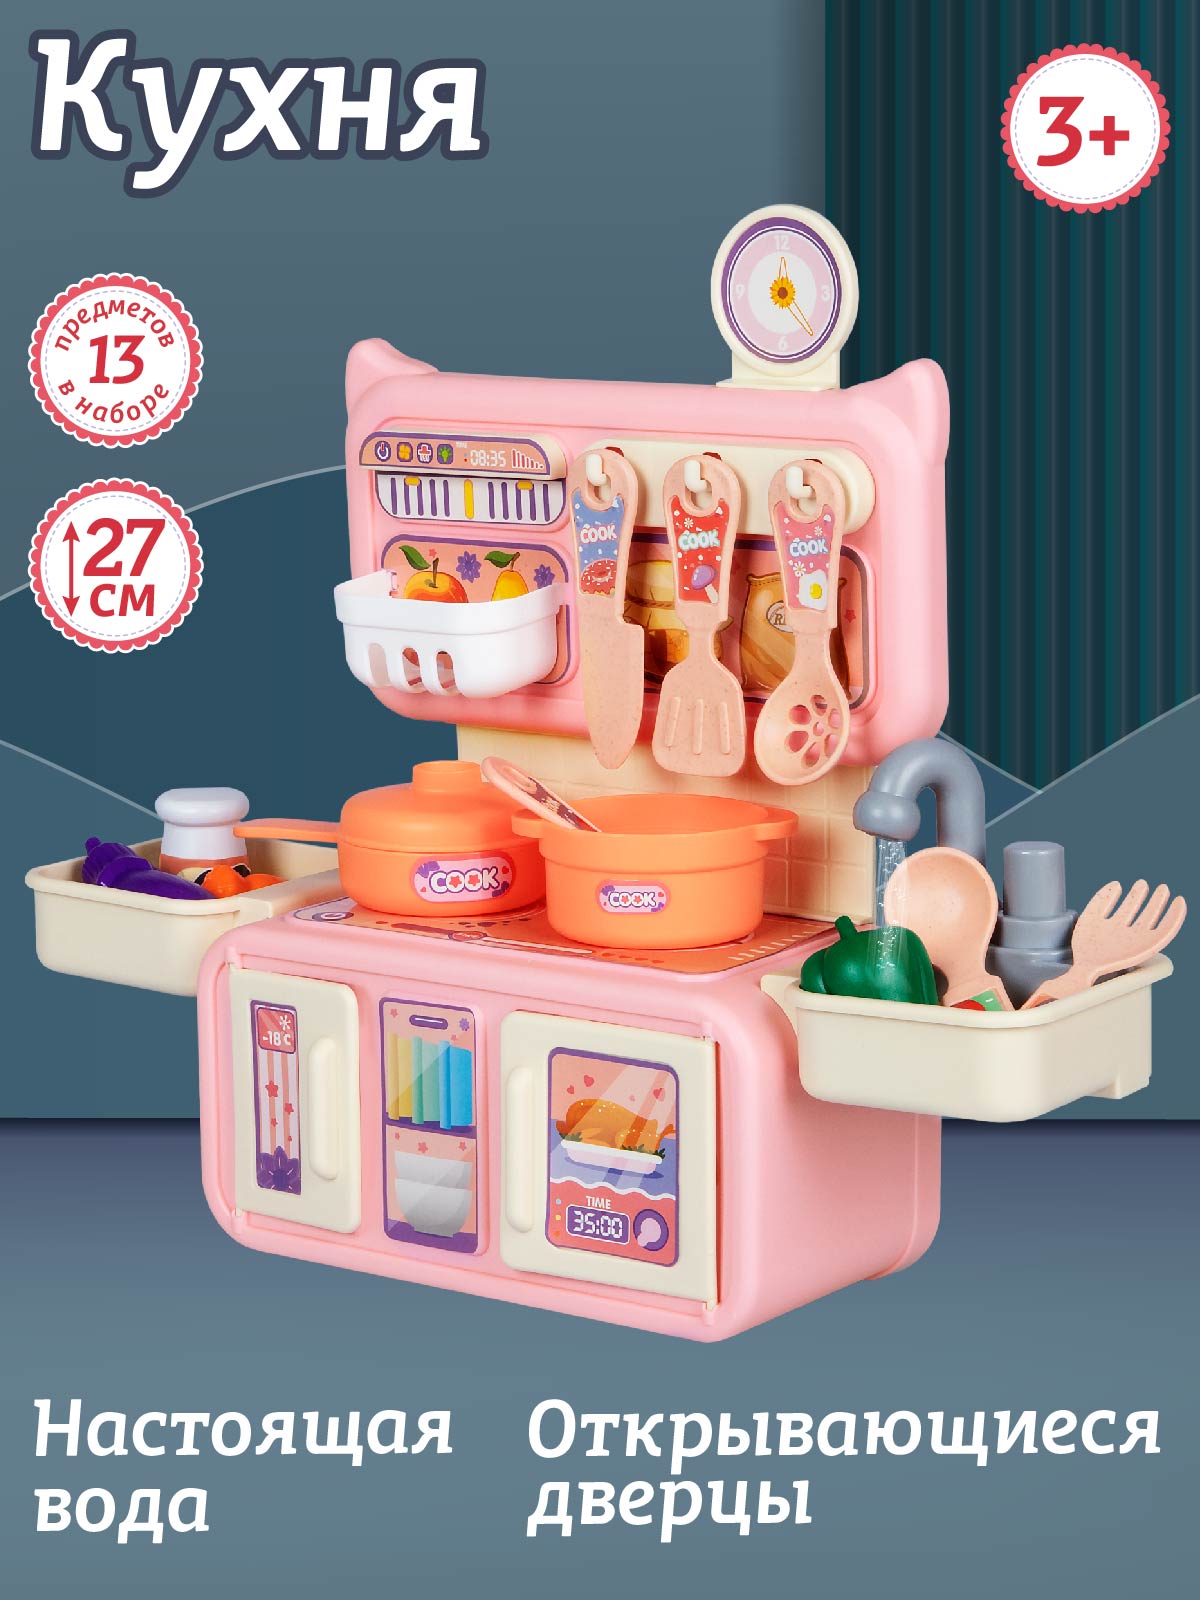 Кухня детская игровая, игрушечные посуда/продукты/приборы, JB0211413